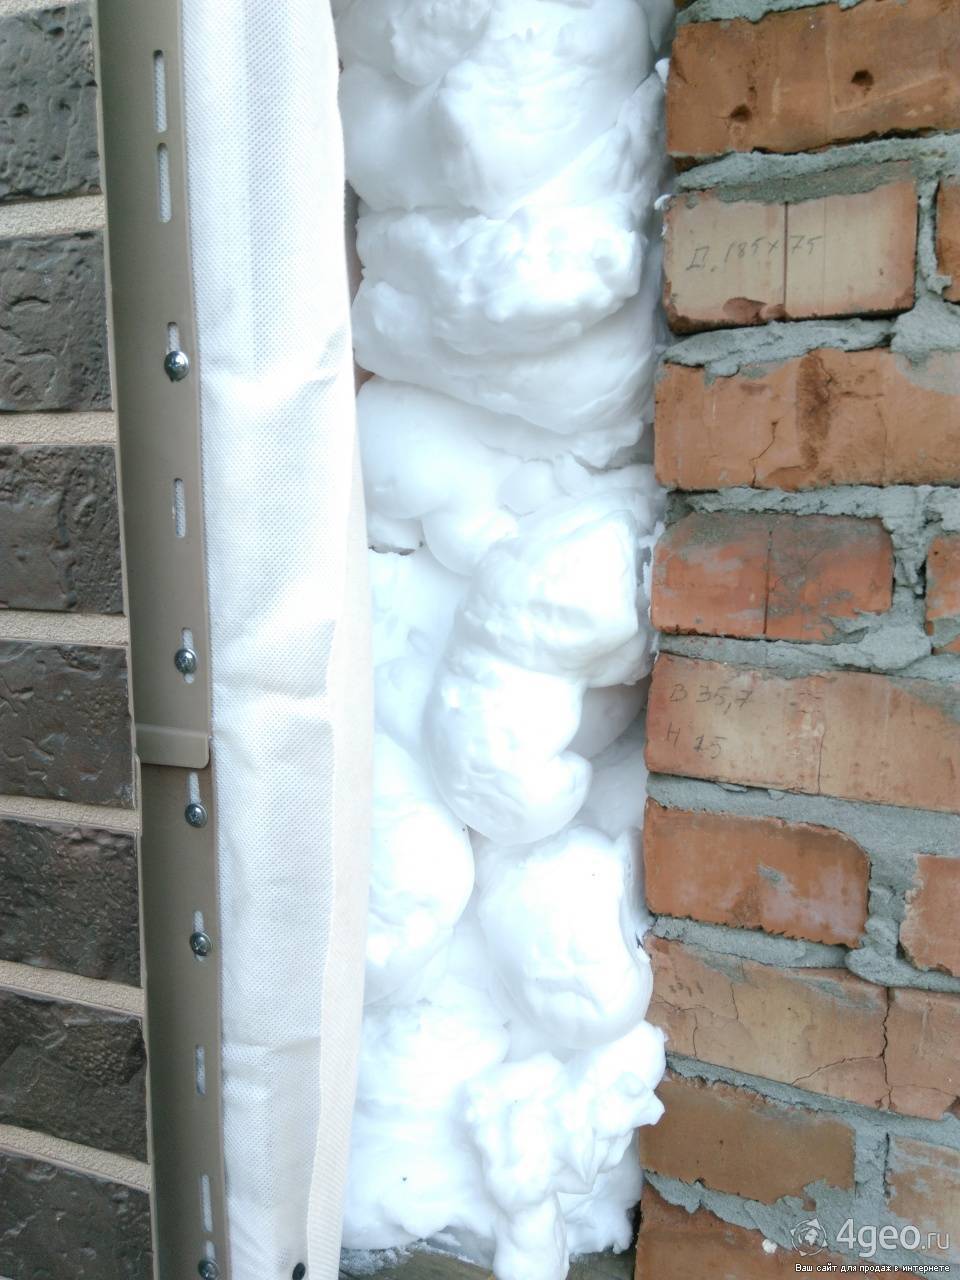 Утепление стен пеноизолом своими руками: подробная инструкция по монтажу теплоизоляции